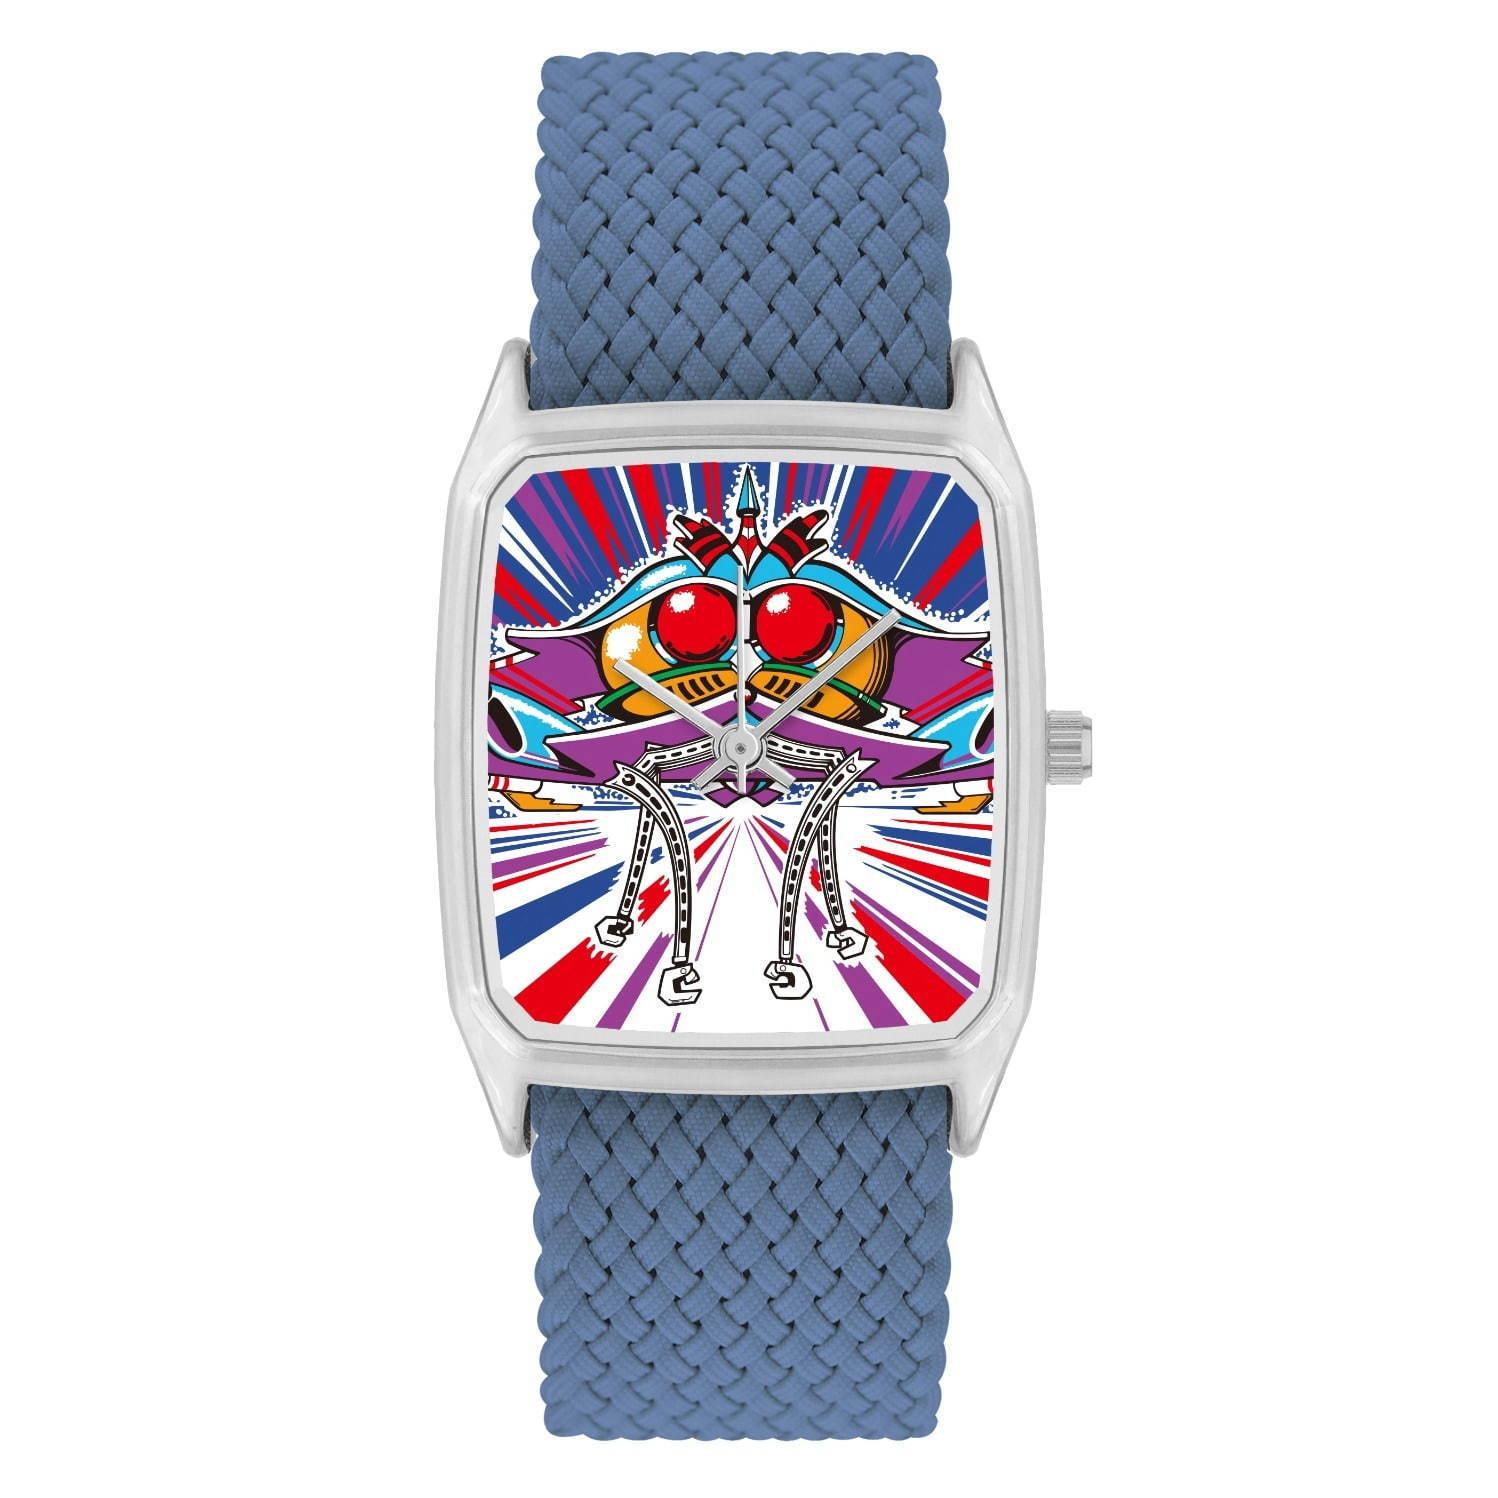 パックマンやゼビウスの腕時計、ナムコミュージアム×アートウォッチブランド「ラプス」のコラボで登場 コピー